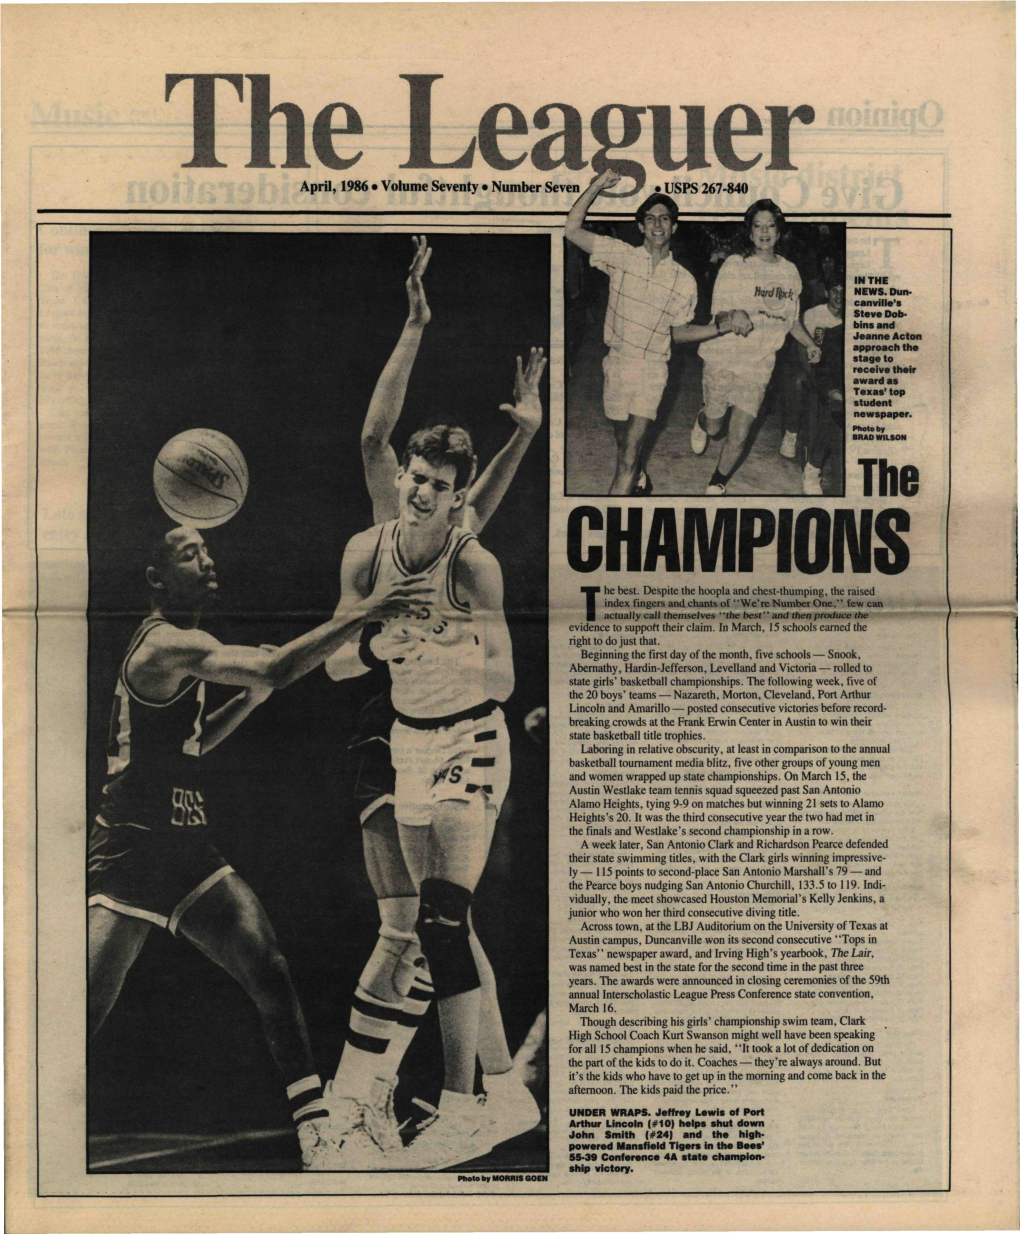 The Leaguer, April 1986